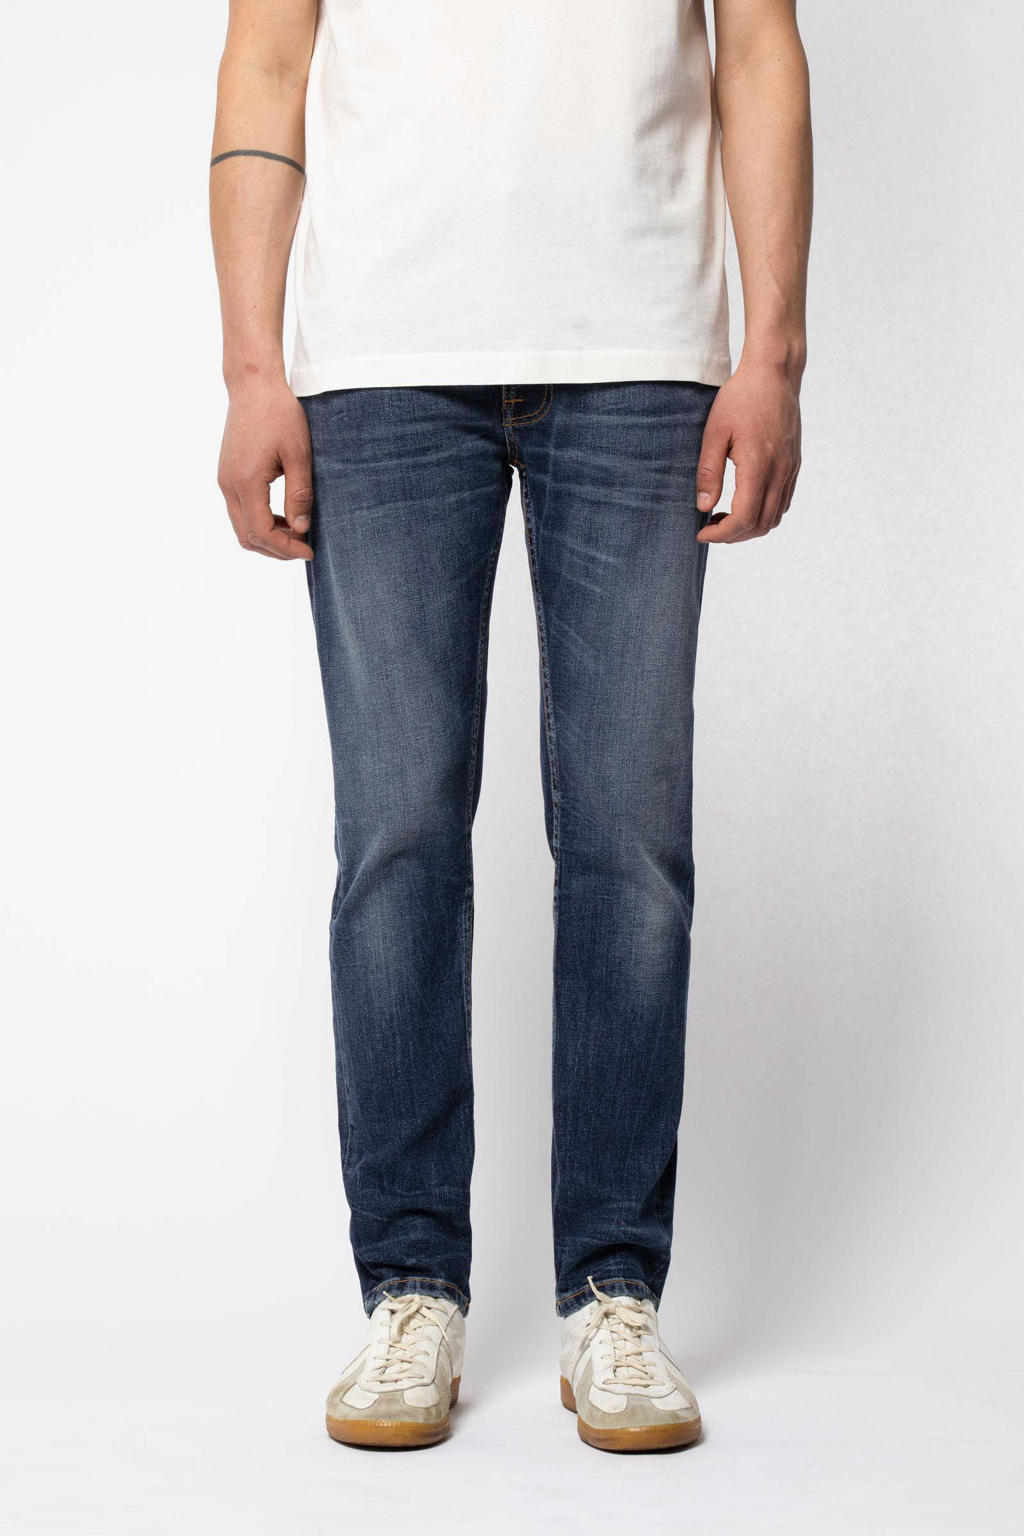 Nudie Jeans slim fit jeans Lean Dean worn indigofera